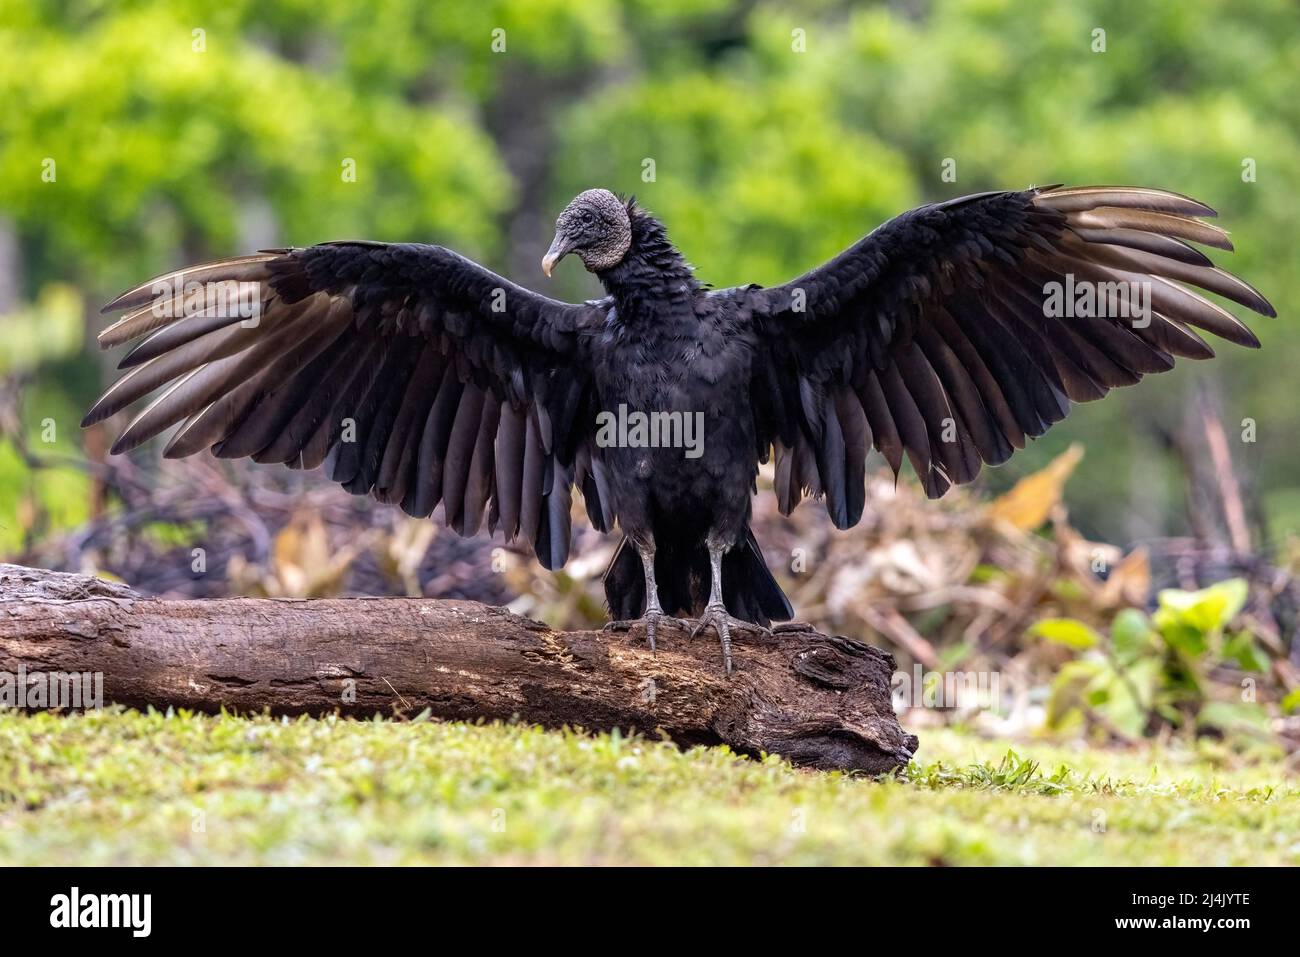 Black vulture (Coragyps atratus) with wings spread - La Laguna del Lagarto Eco-Lodge, Boca Tapada, Costa Rica Stock Photo